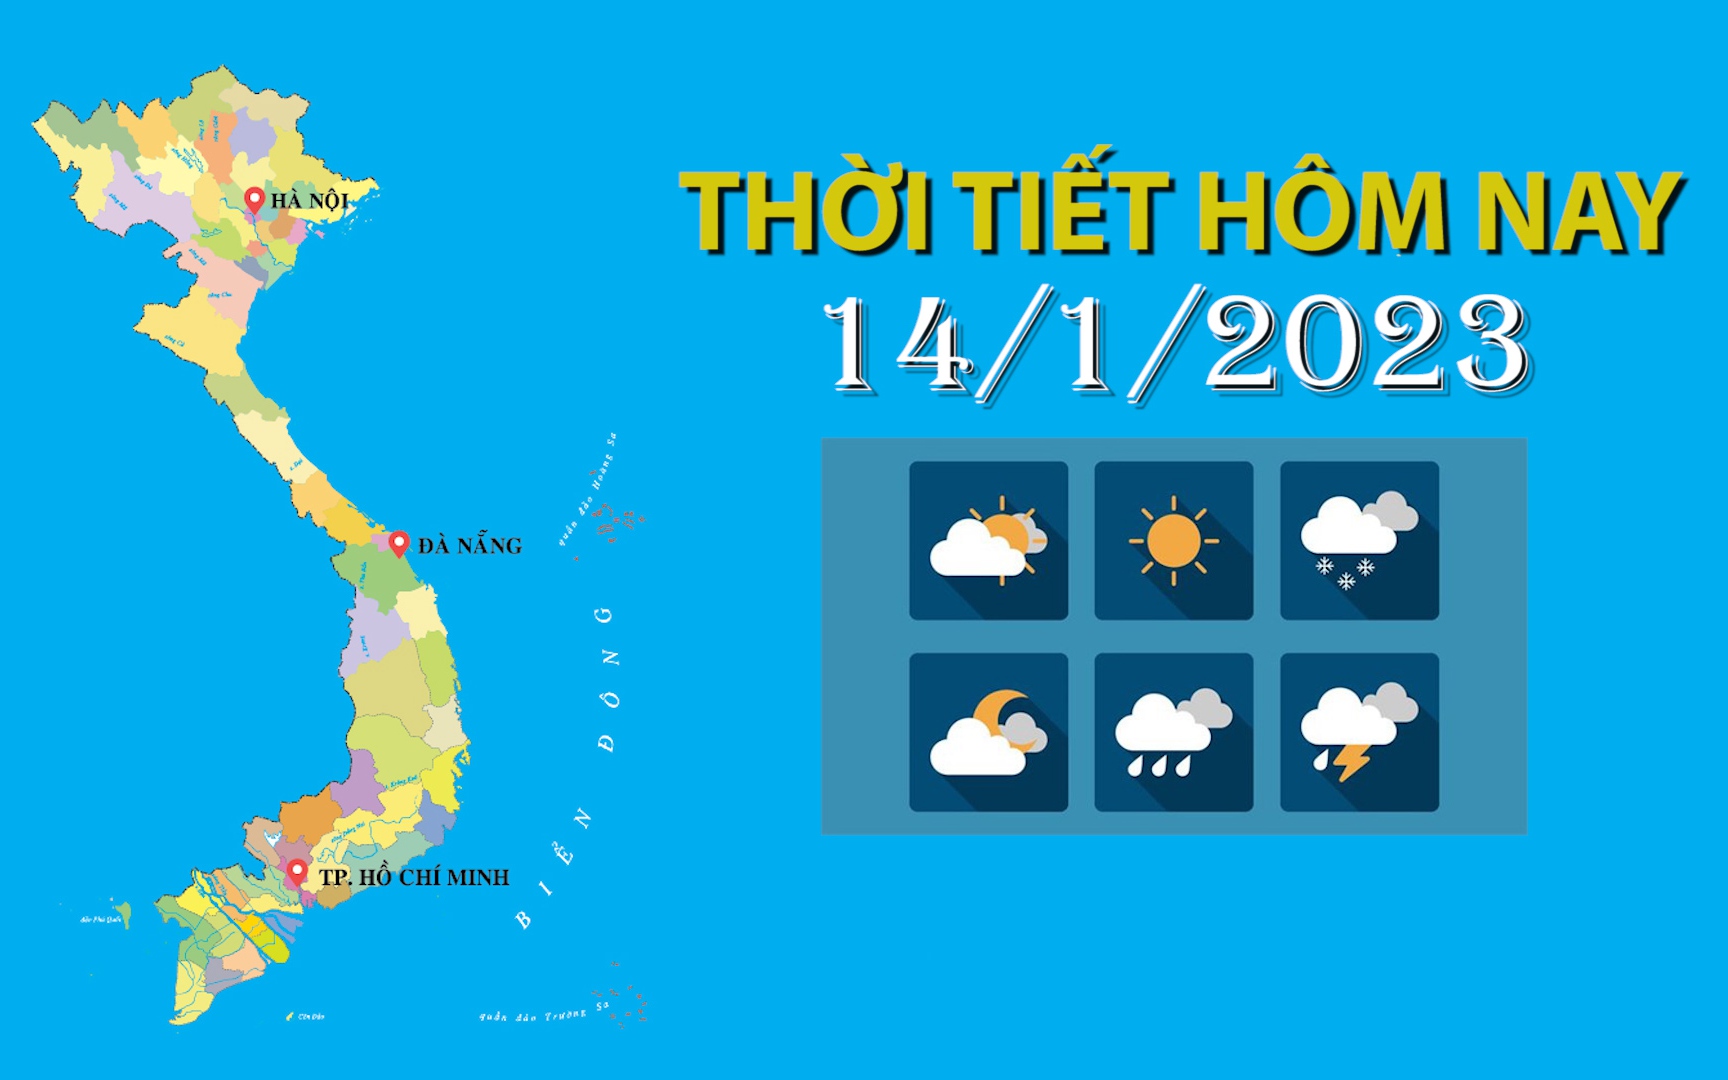 Thời tiết hôm nay 14/1/2023: Bắc Bộ sắp đón không khí lạnh, trời rét đậm, vùng núi rét hại